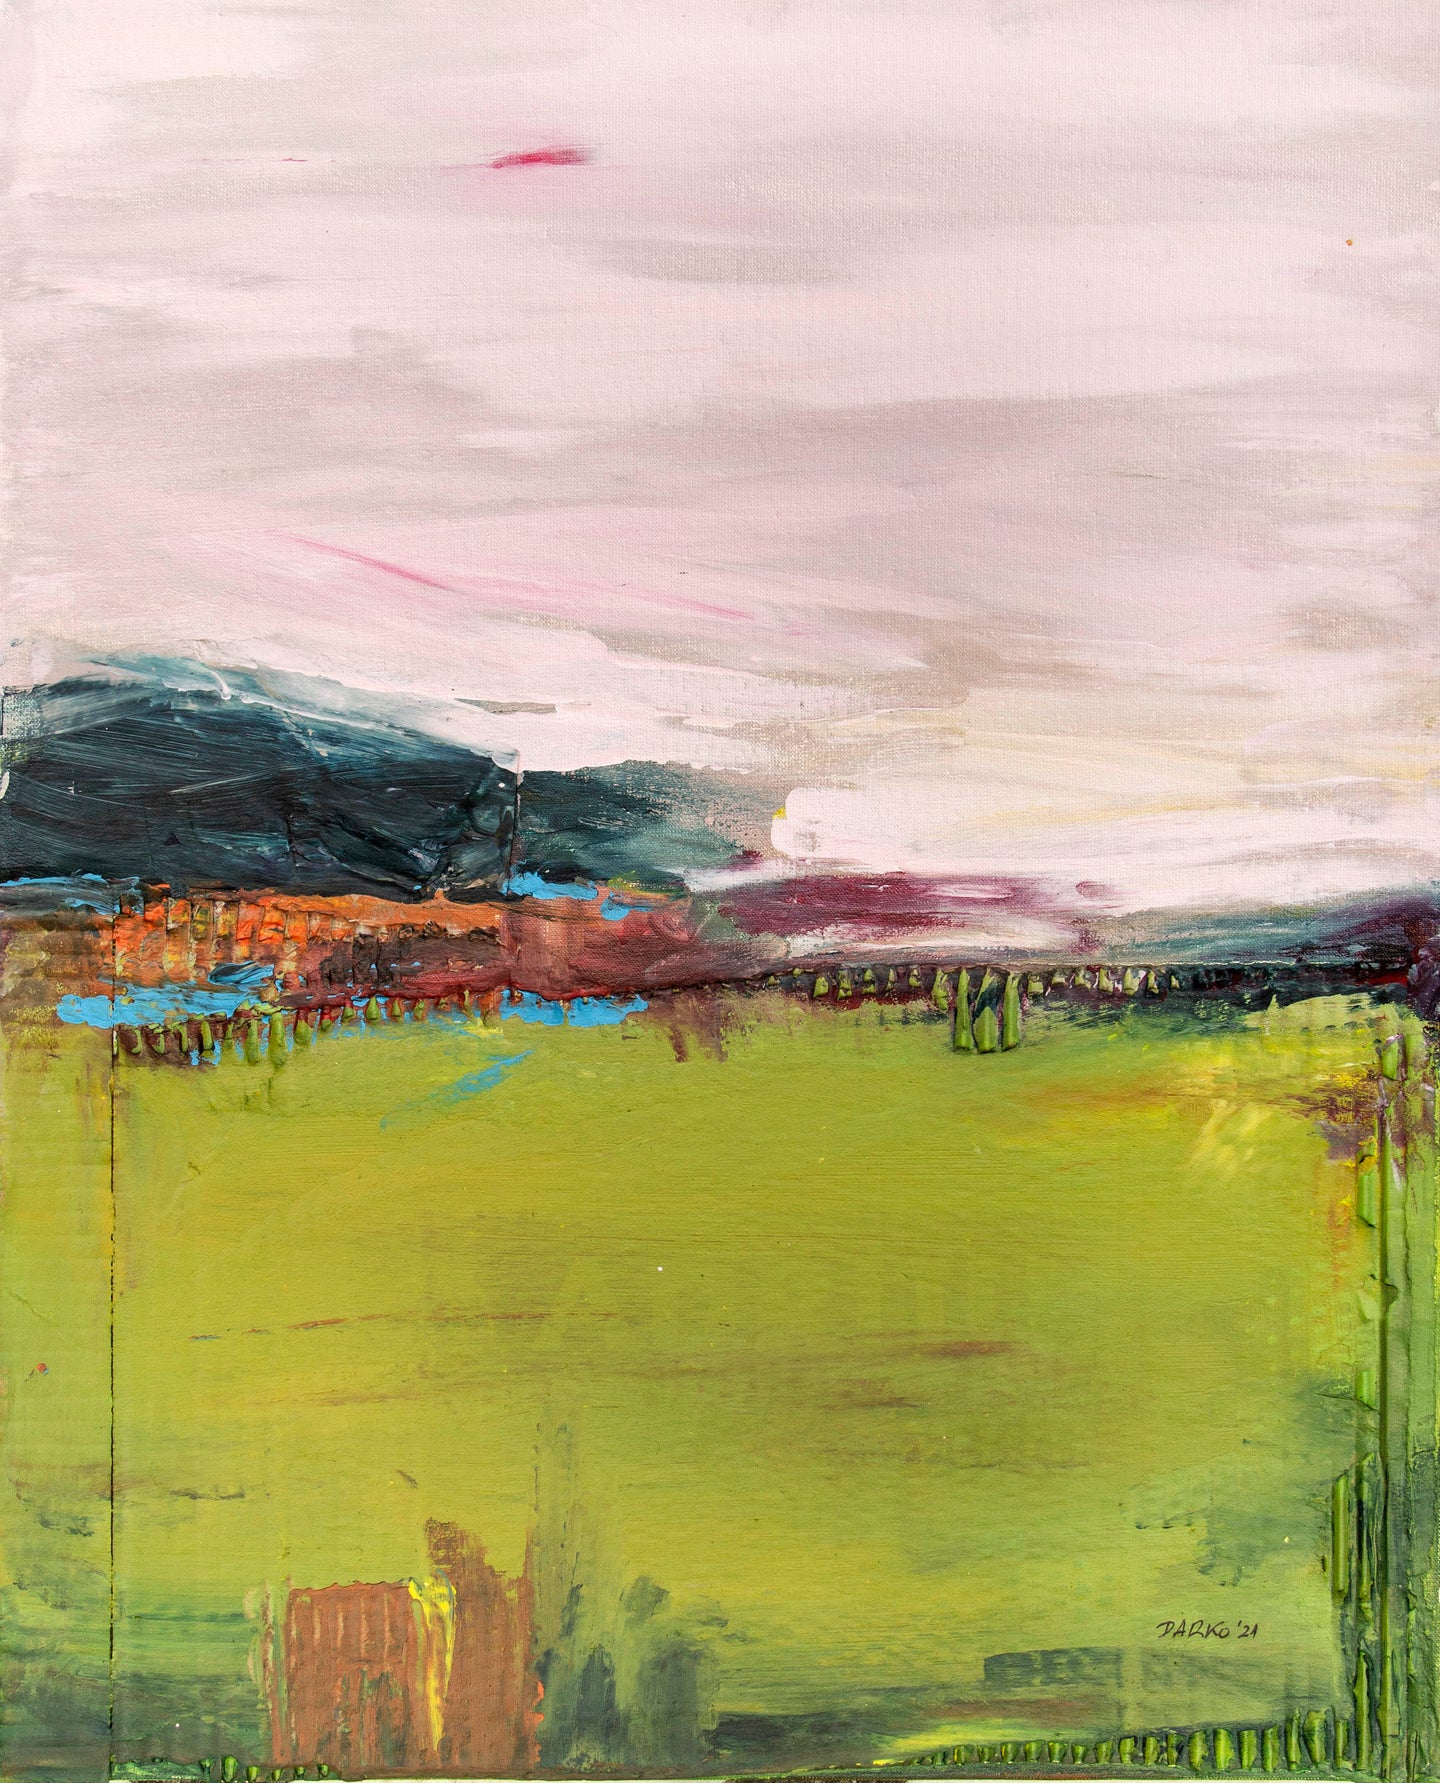 Pink Landscapes II by Darko Taleski